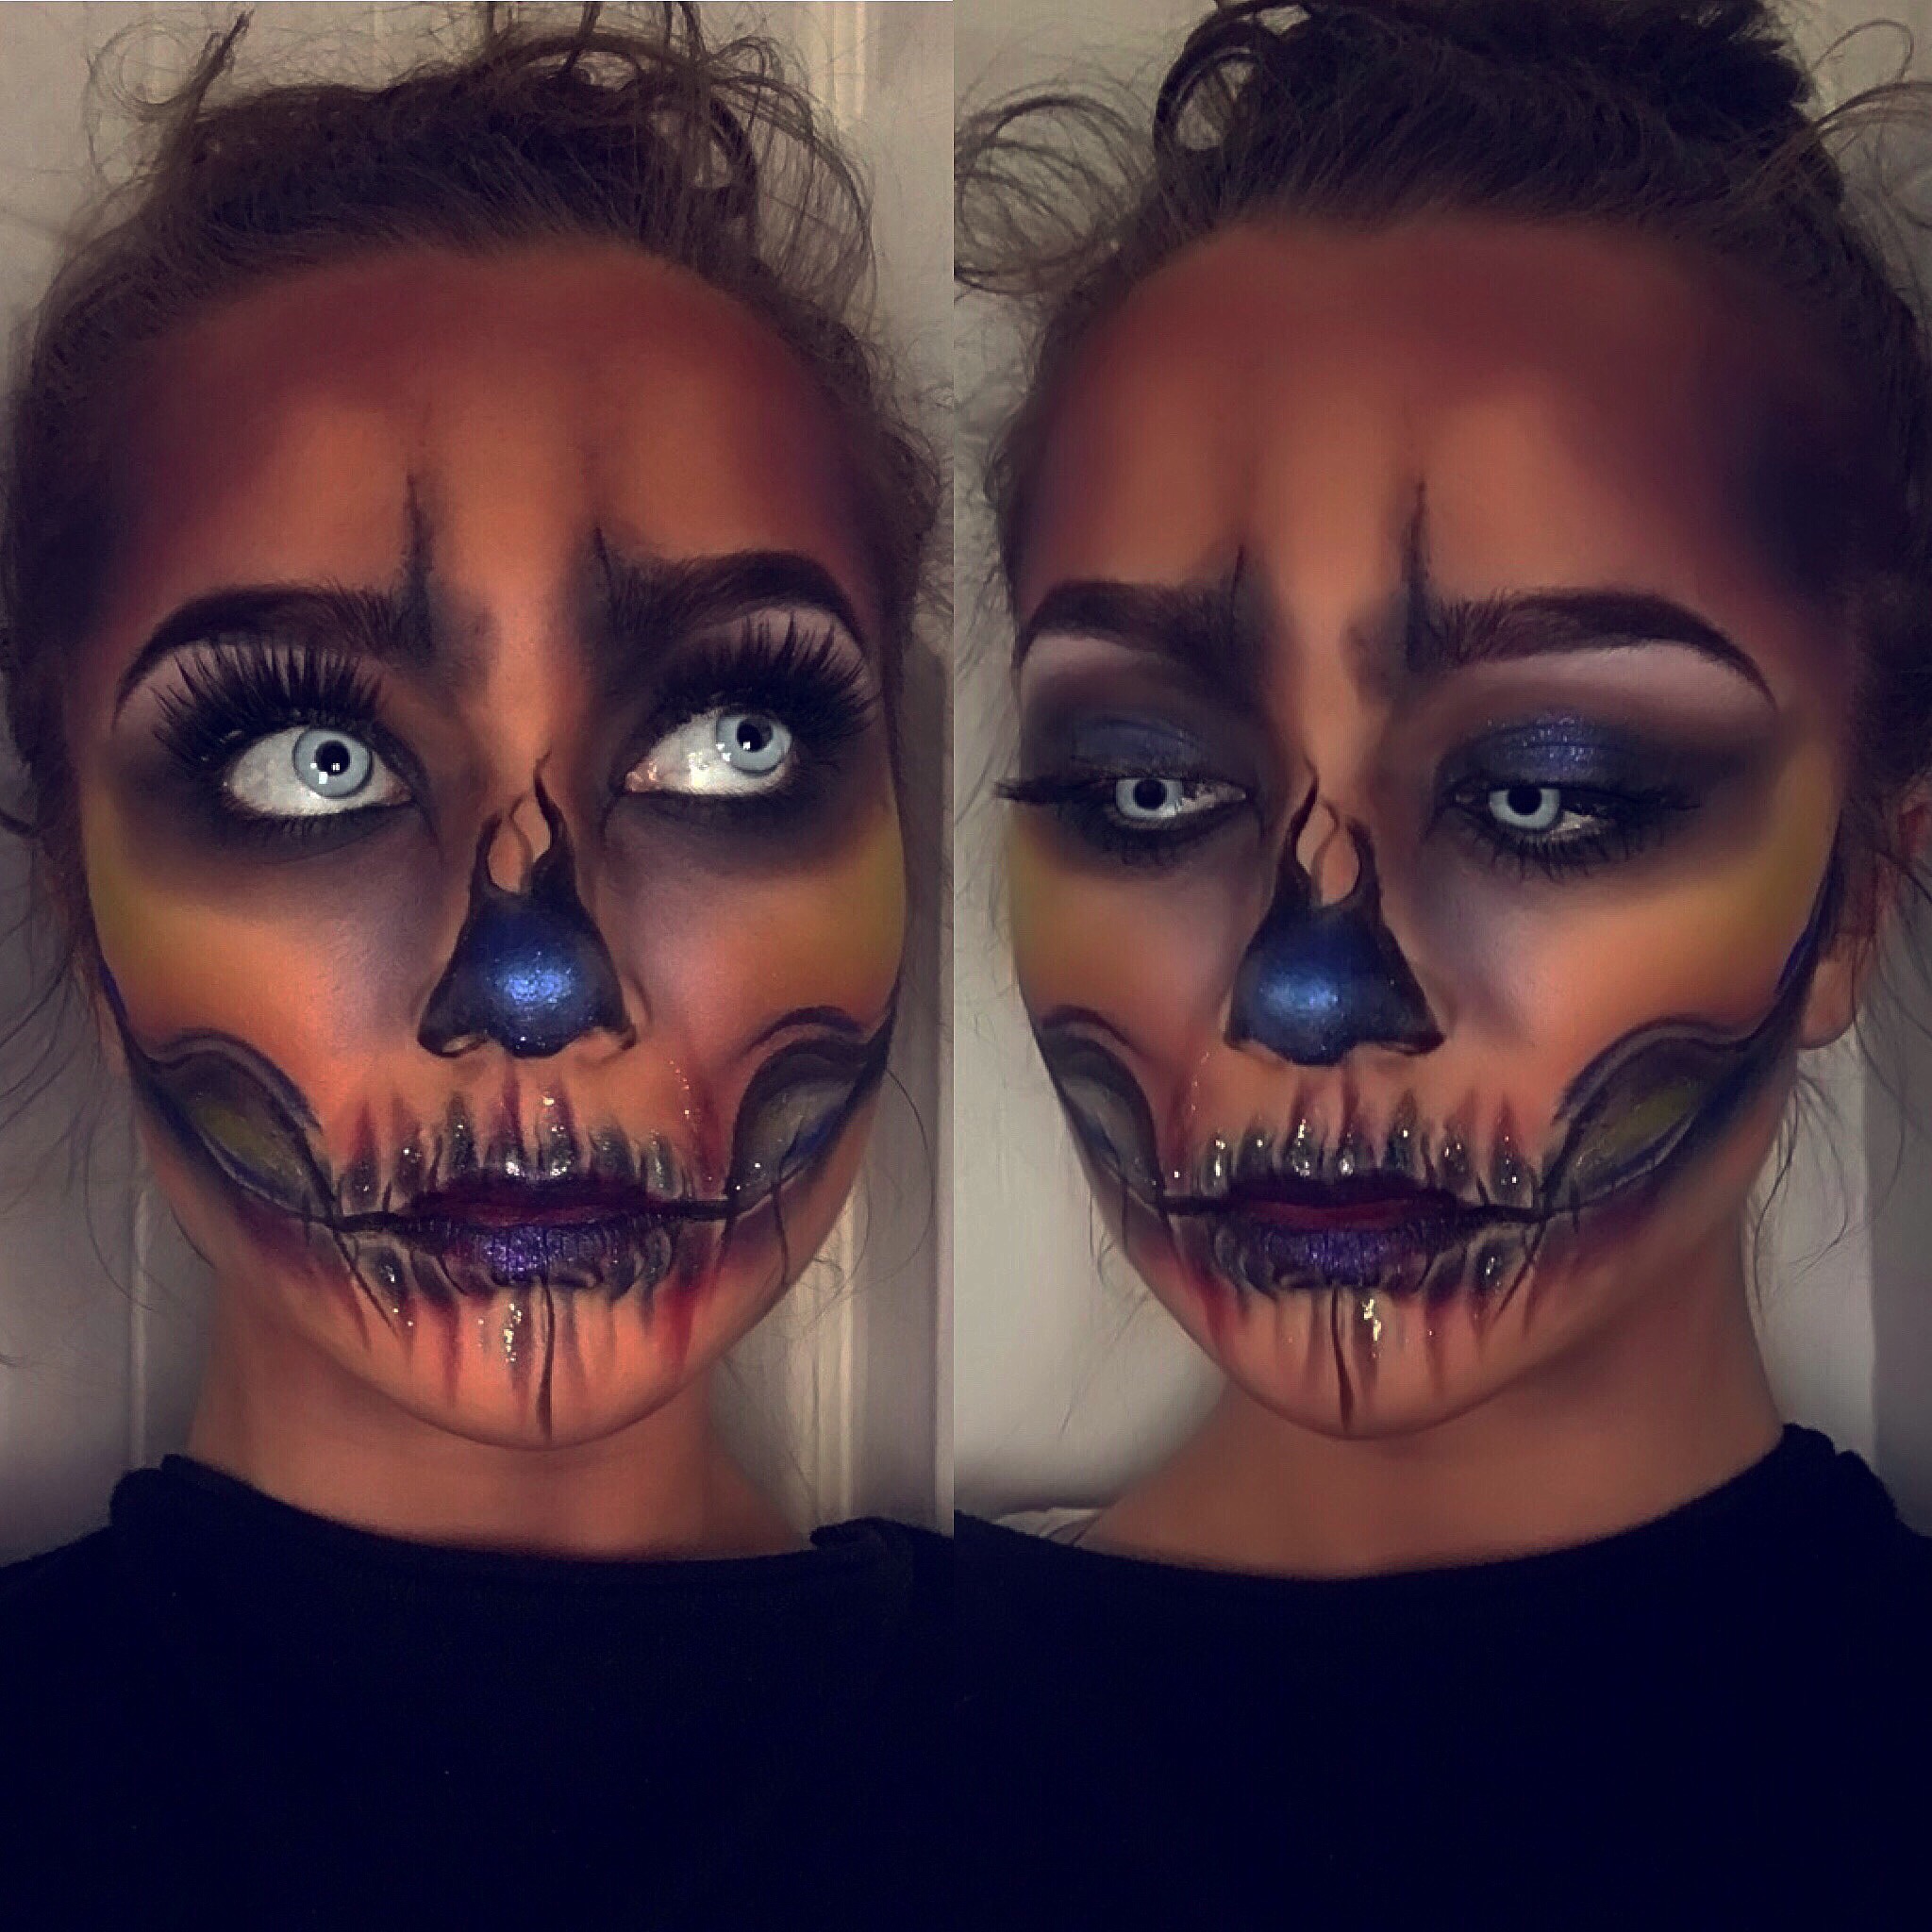 Skeleton, Halloween, makeup, cosmetics